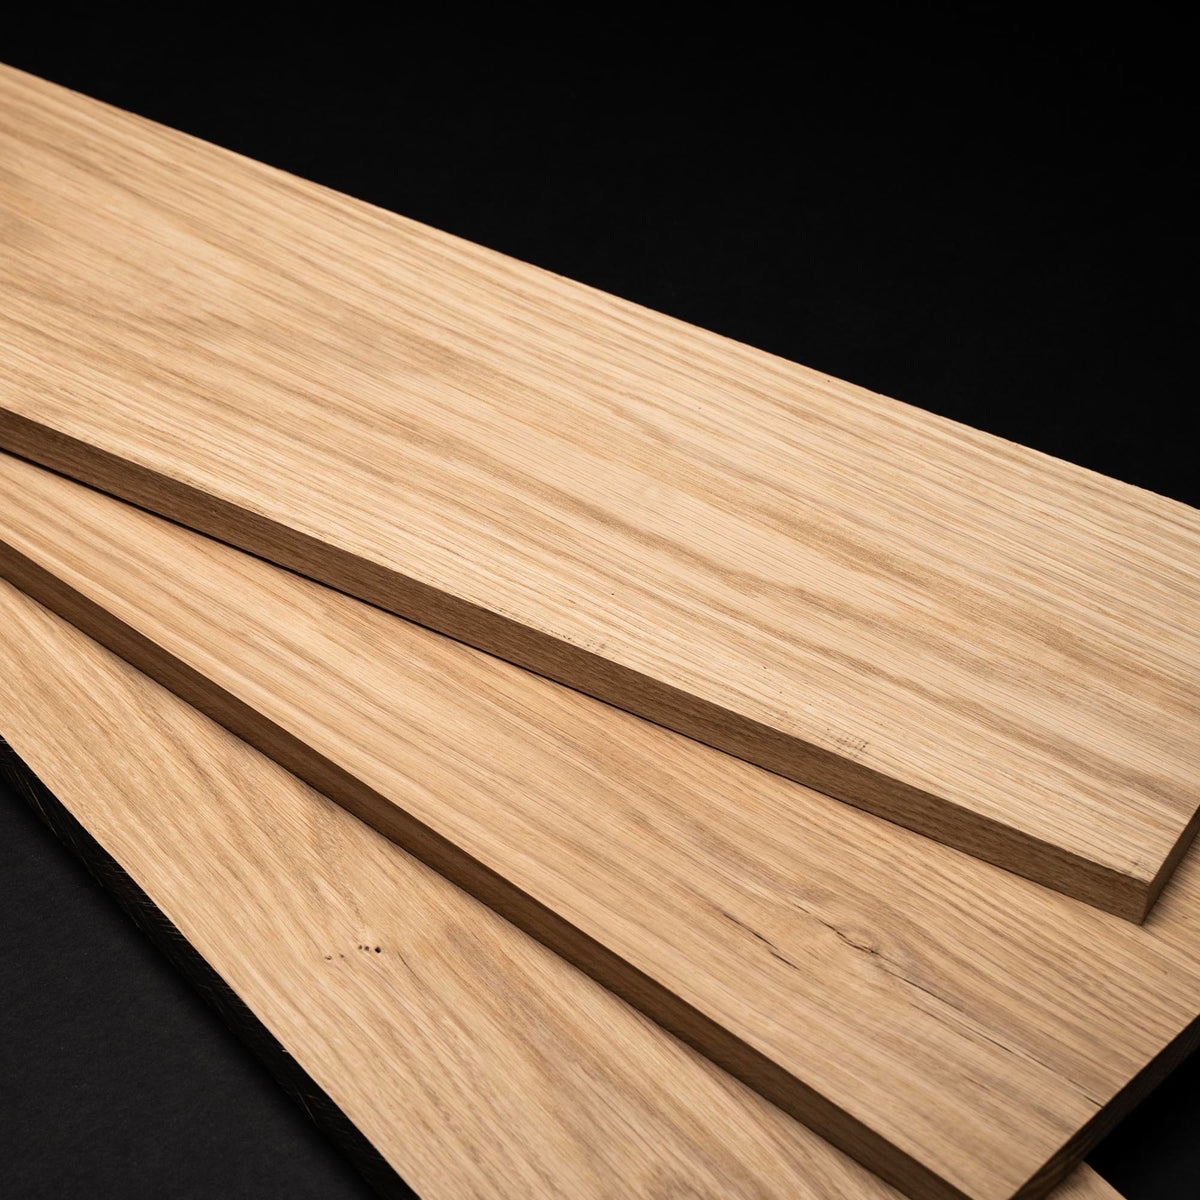 4/4 1” White Oak Boards - Kiln Dried Dimensional Lumber - Cut to Size White Oak Board